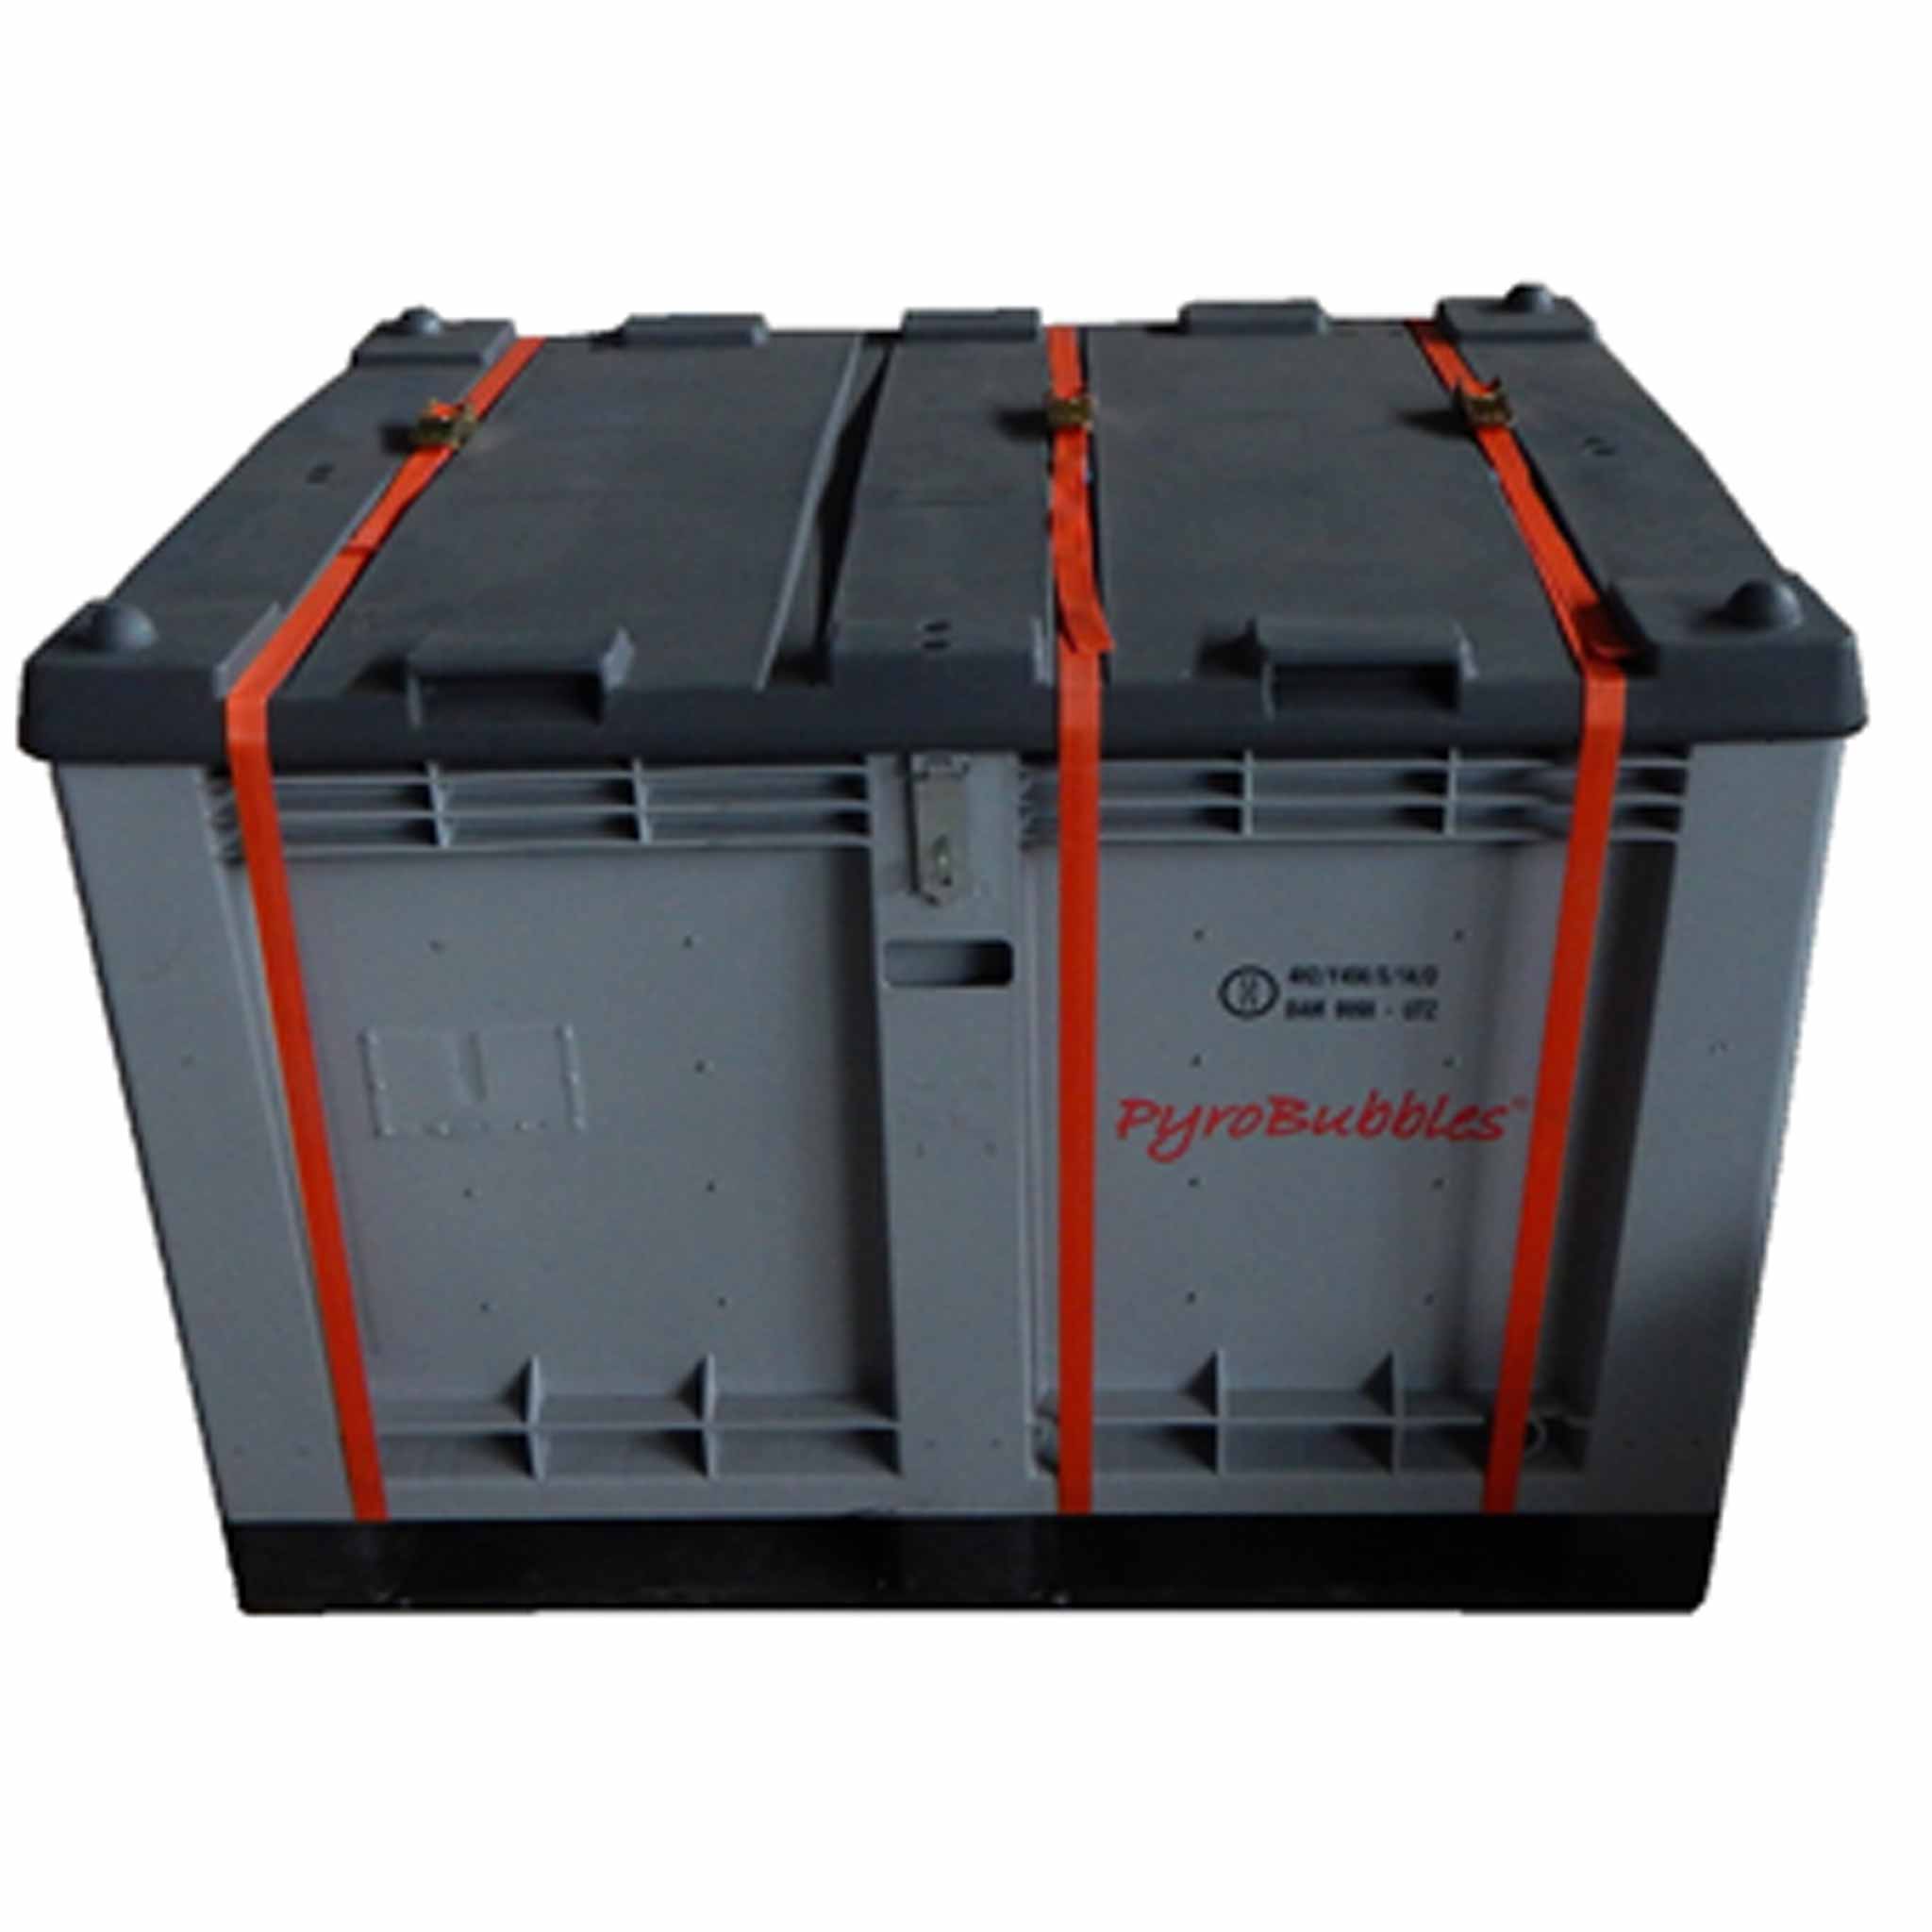 M-Box-Advanced Sicherheitsbehälter für Lithium-Ionen-Batterien